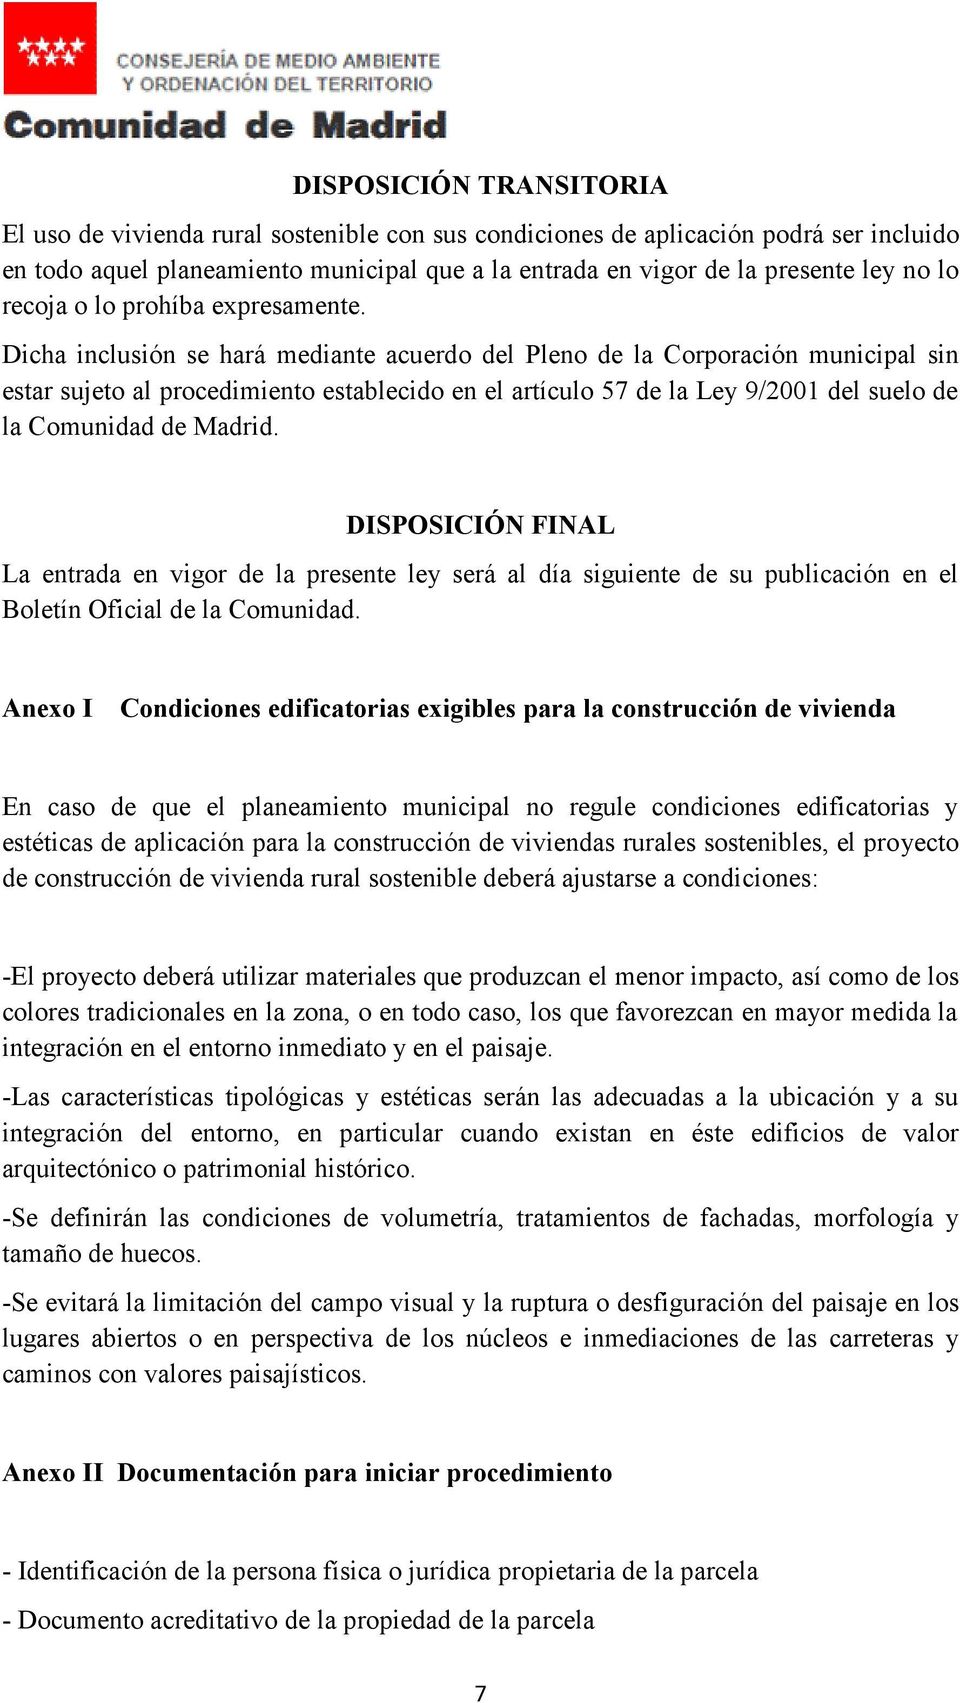 Dicha inclusión se hará mediante acuerdo del Pleno de la Corporación municipal sin estar sujeto al procedimiento establecido en el artículo 57 de la Ley 9/2001 del suelo de la Comunidad de Madrid.